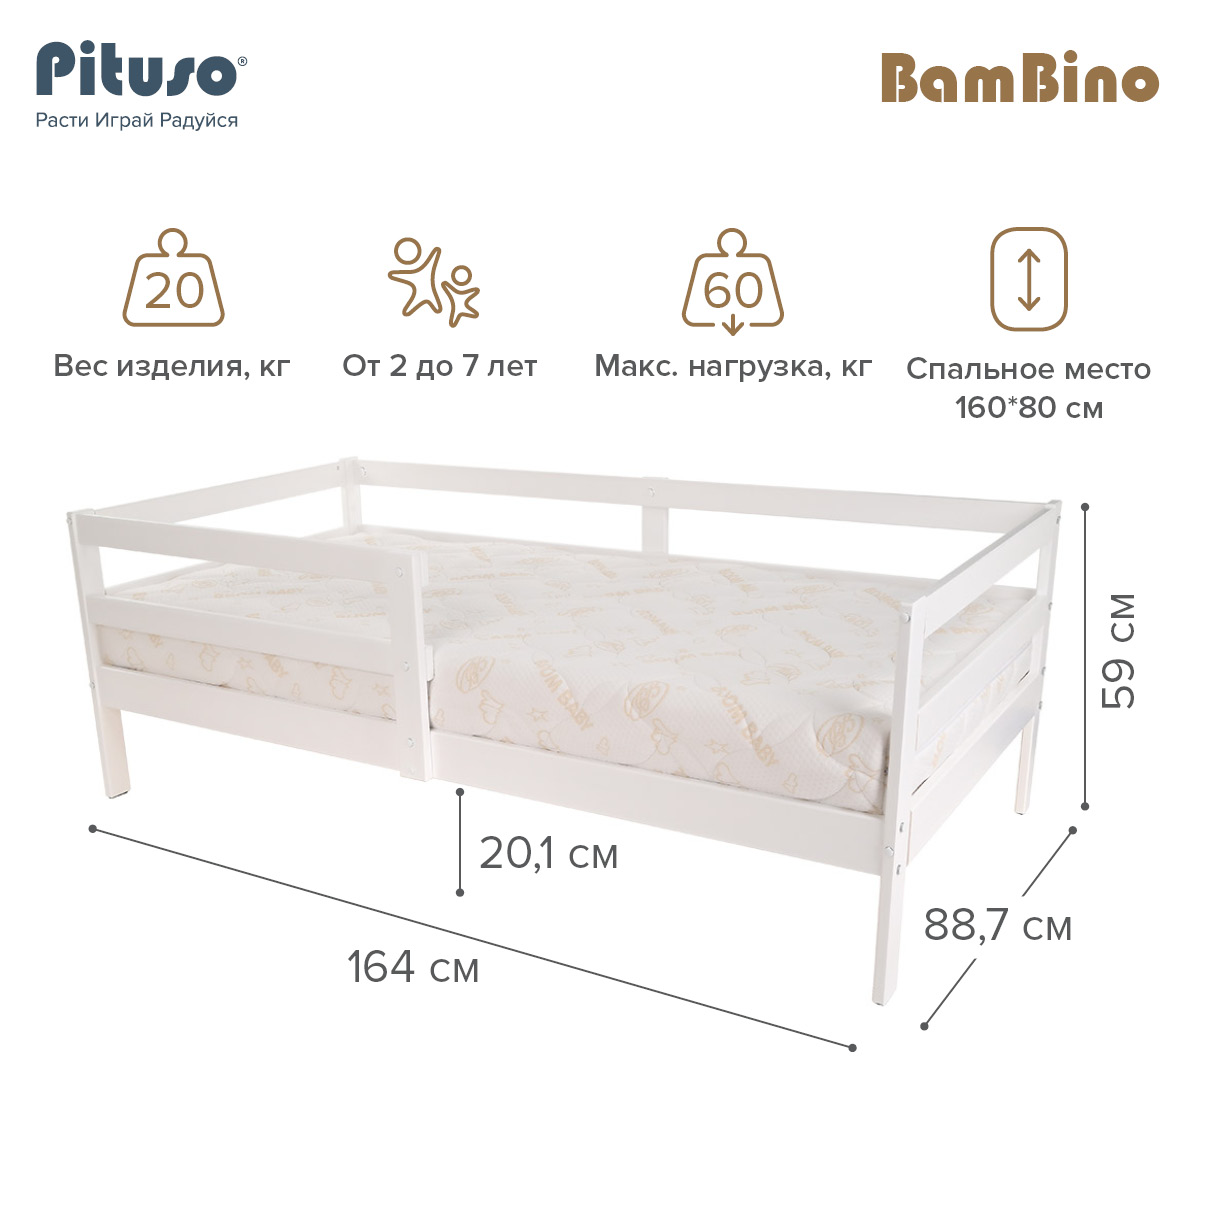 Кровать подростковая Pituso BamBino белый подростковая кровать pituso софа эко